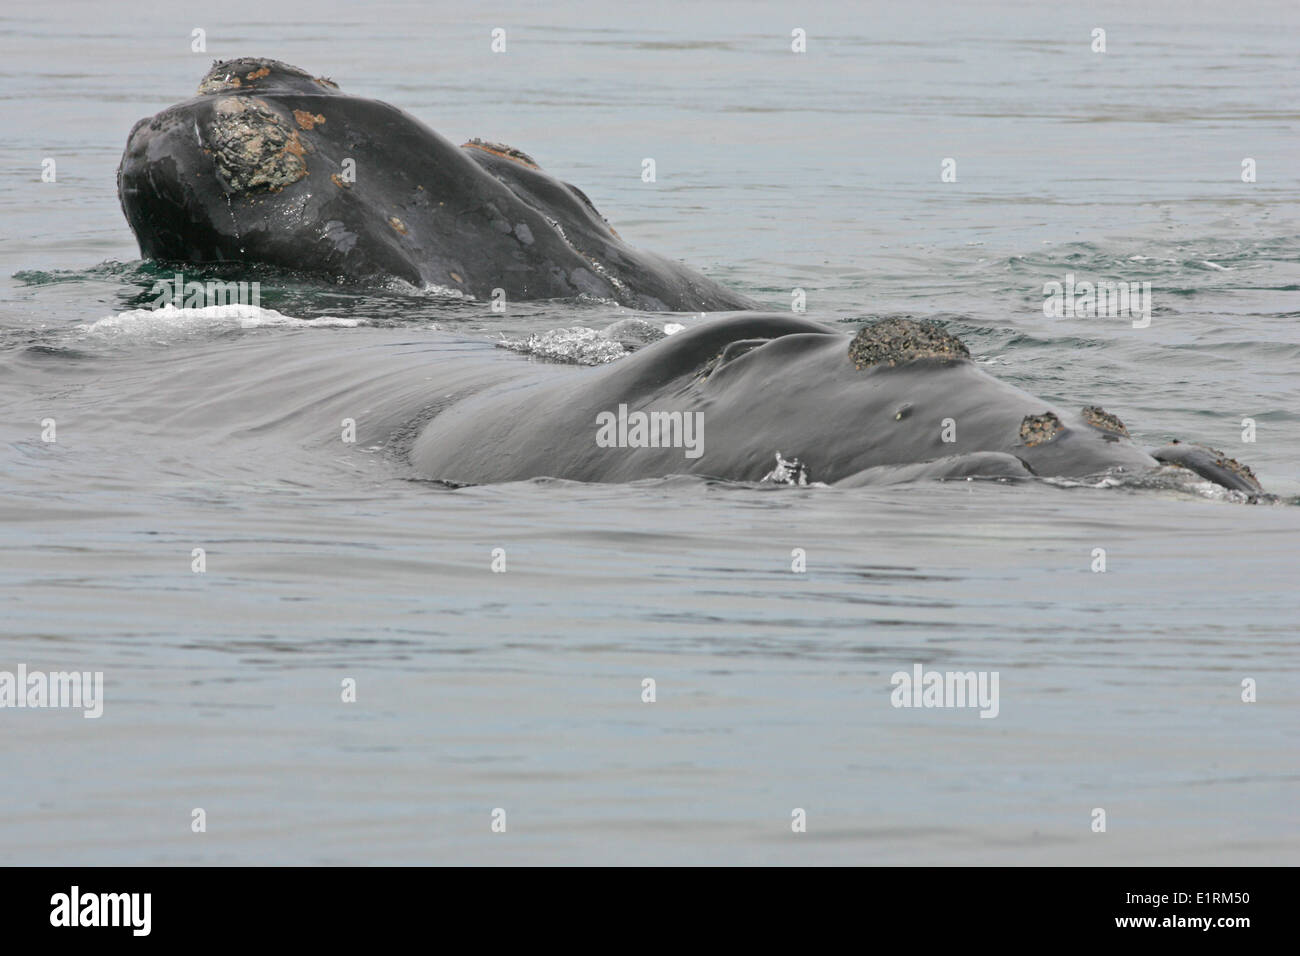 Southern Right Whale (Eubalaena australis) Stock Photo